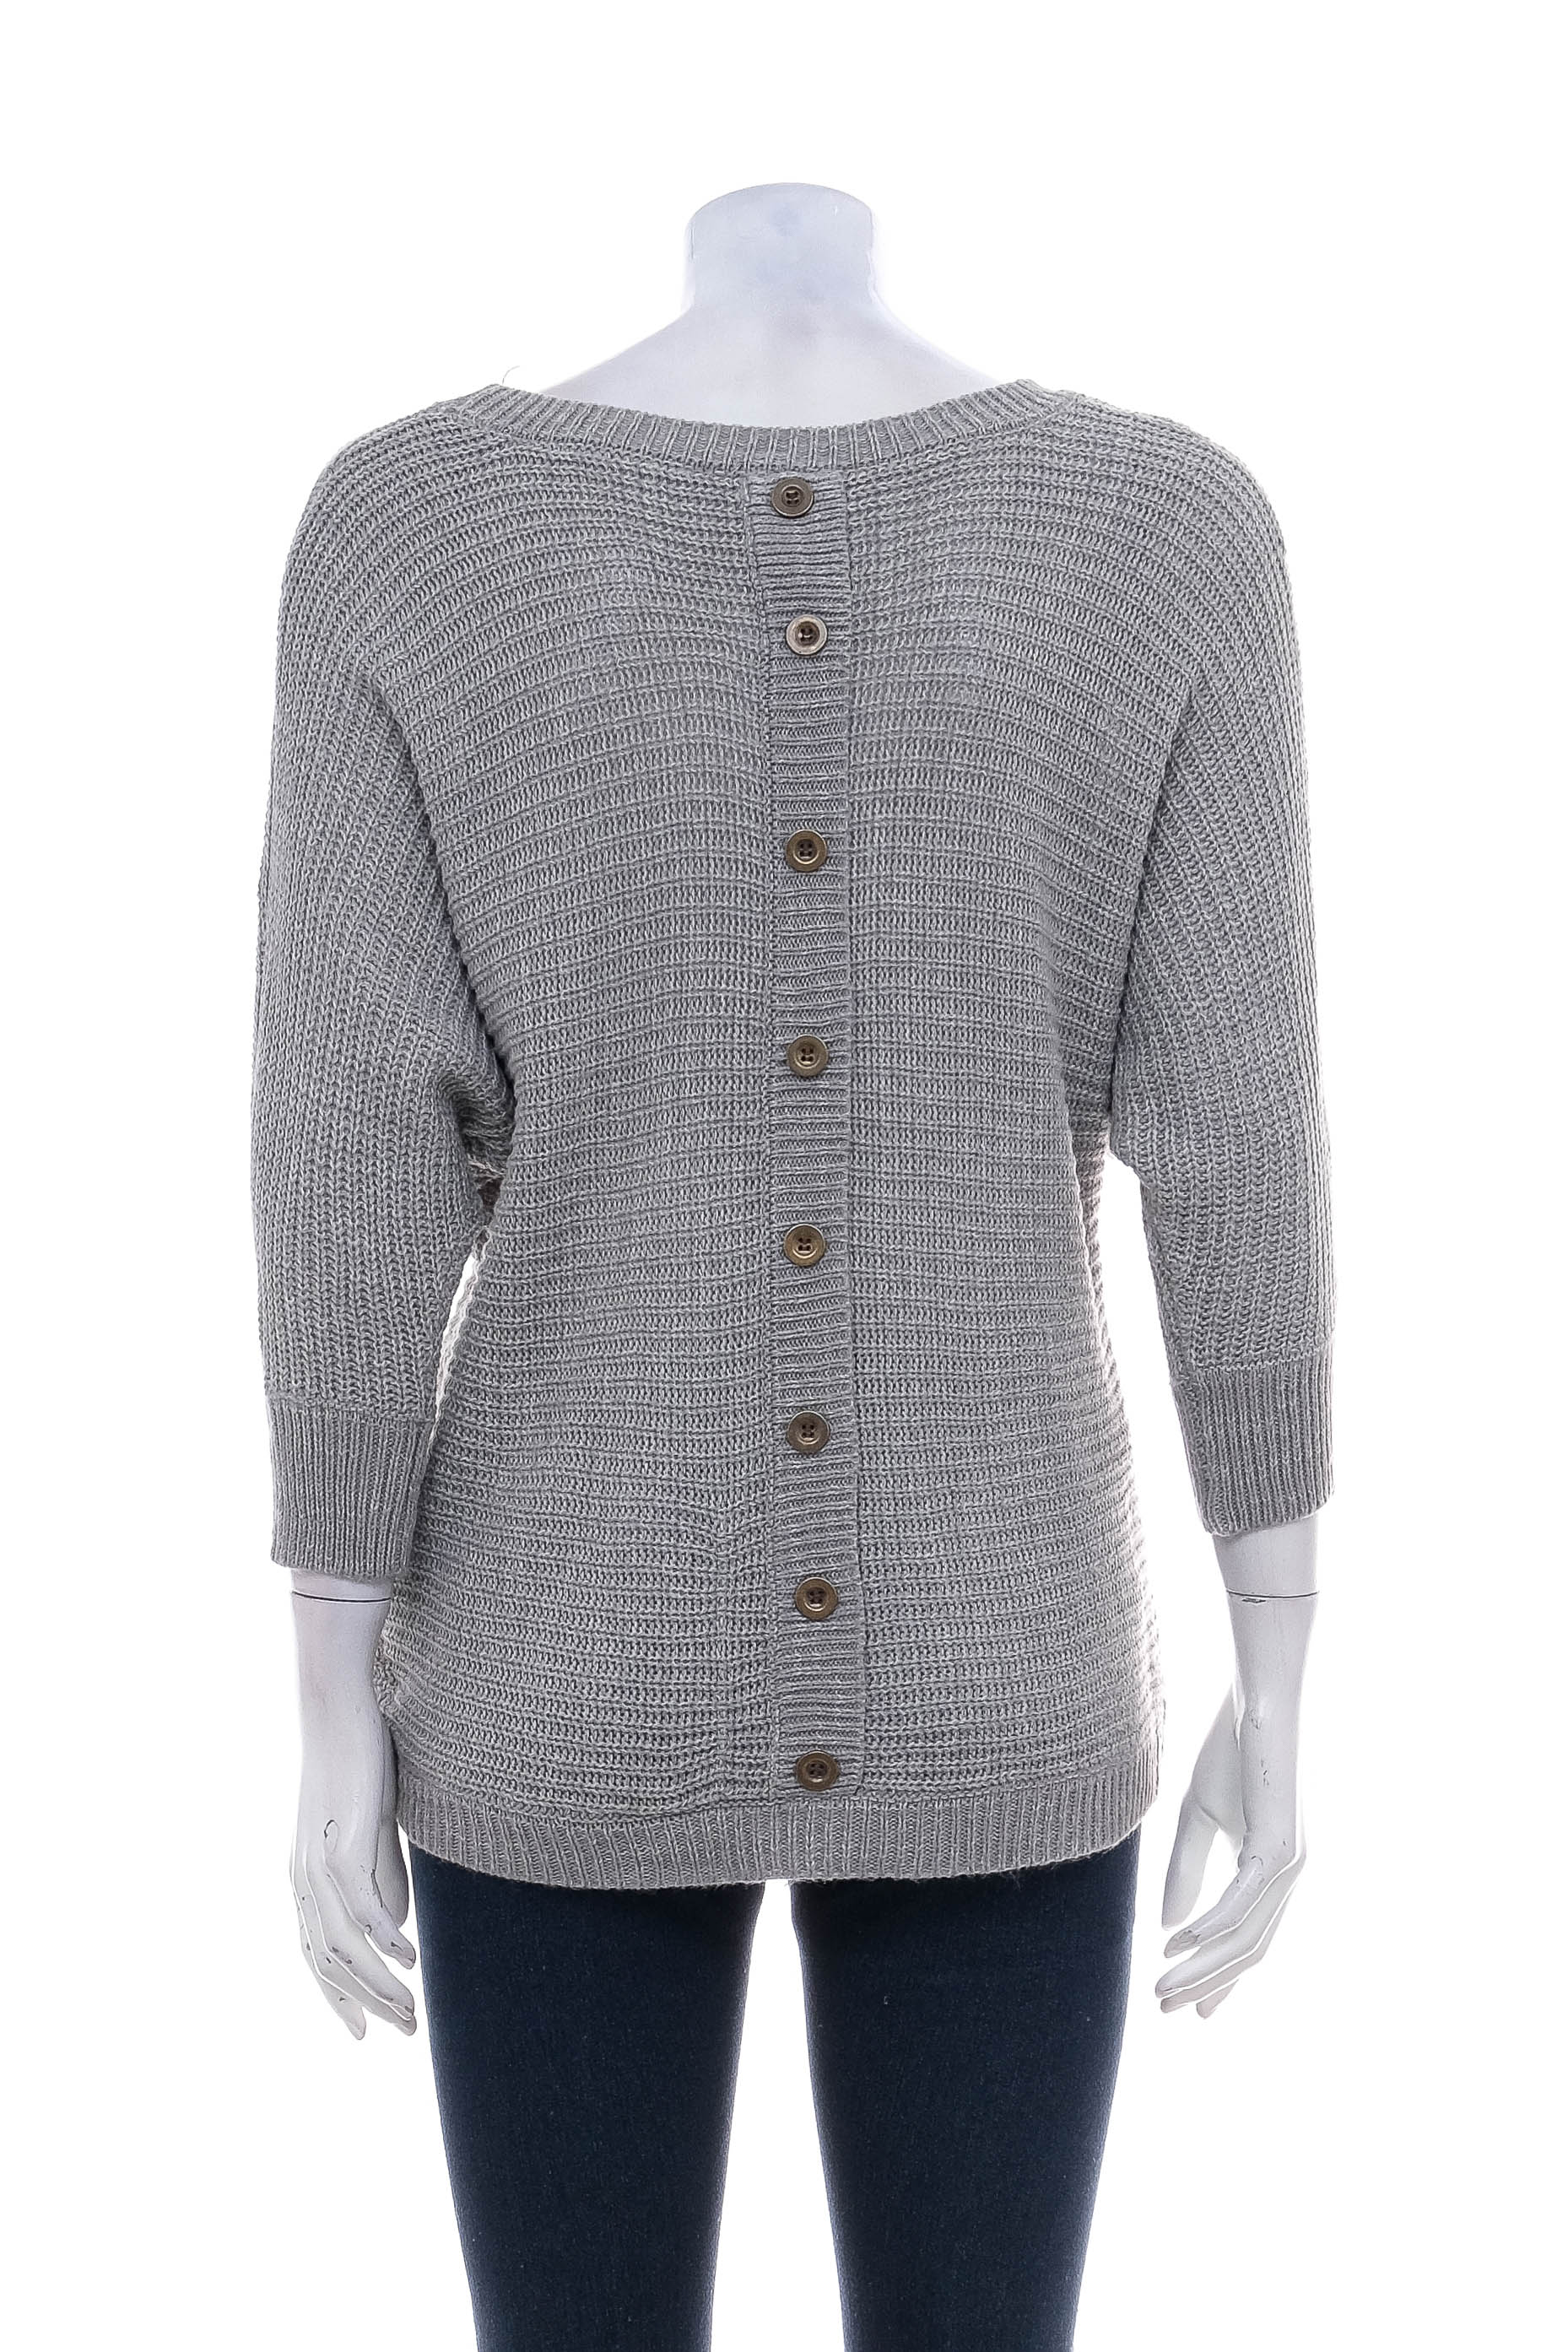 Women's sweater - MIA & TESS - 1